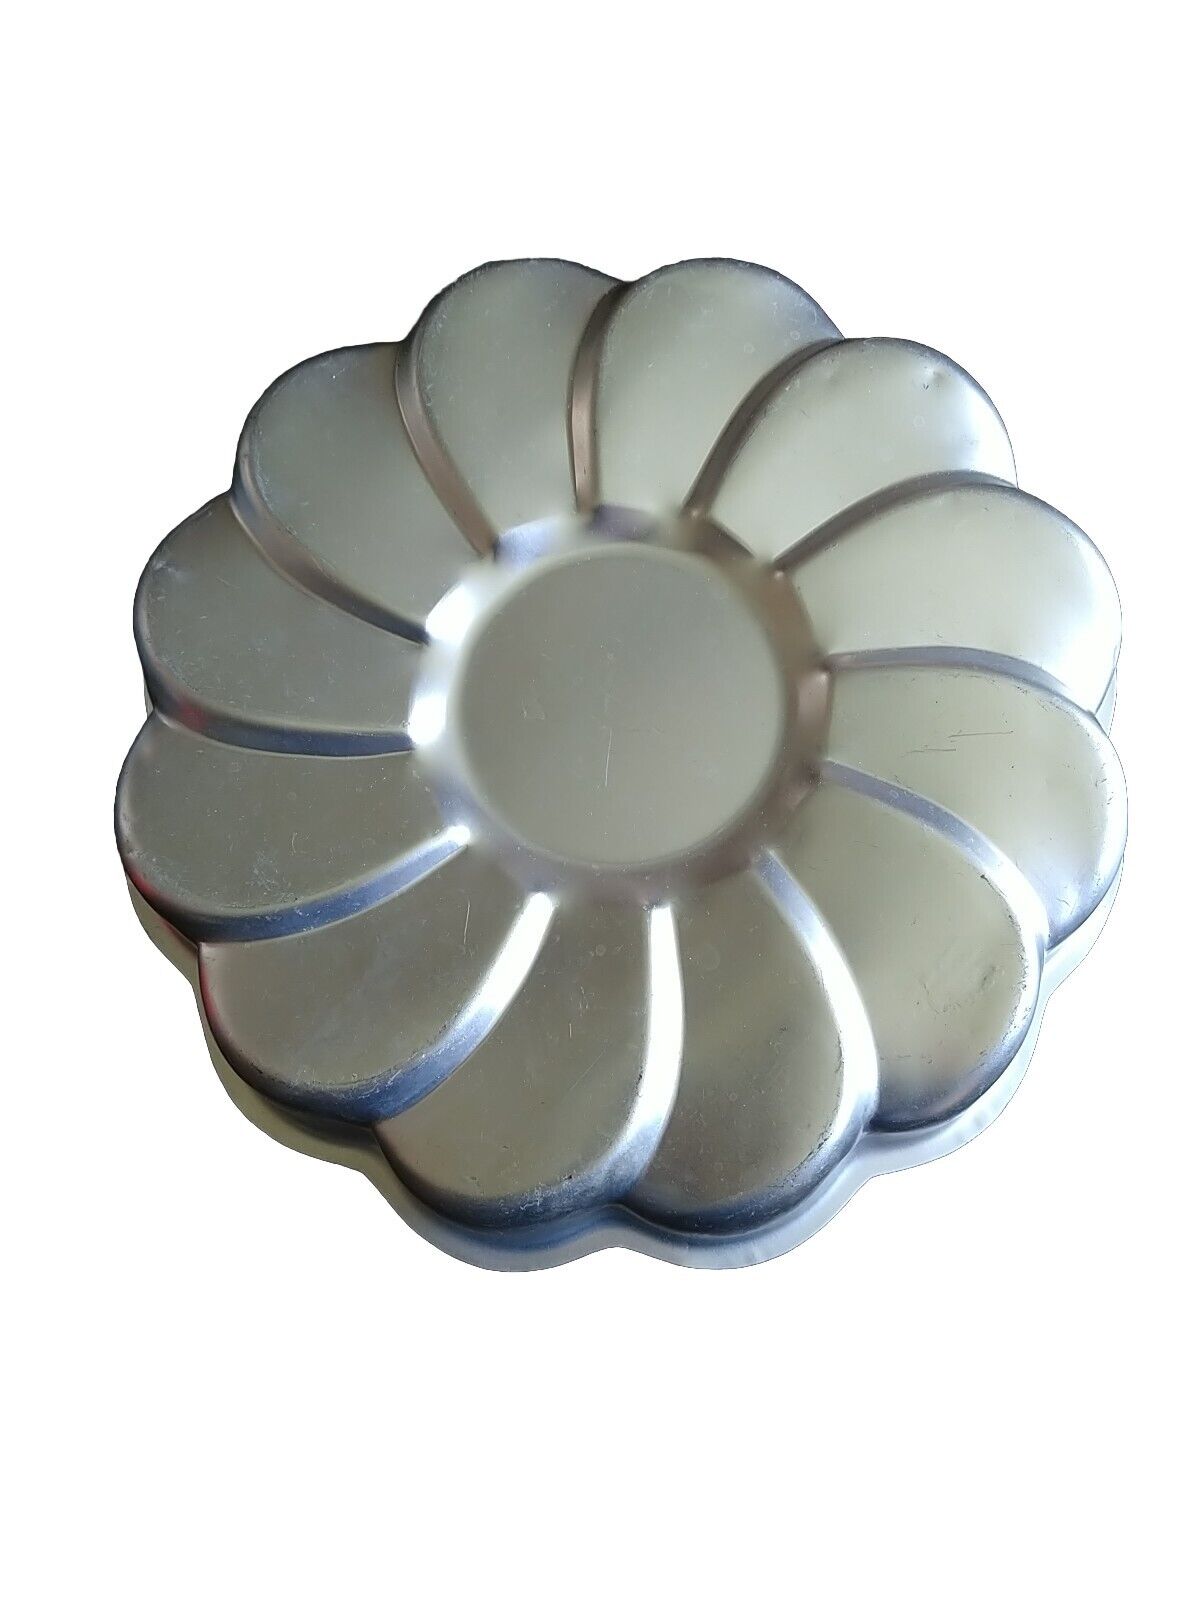 Vtg Wilton Viennese Swirl Round Flower Cake Pan Mold  2105-8252 11 inch 1989